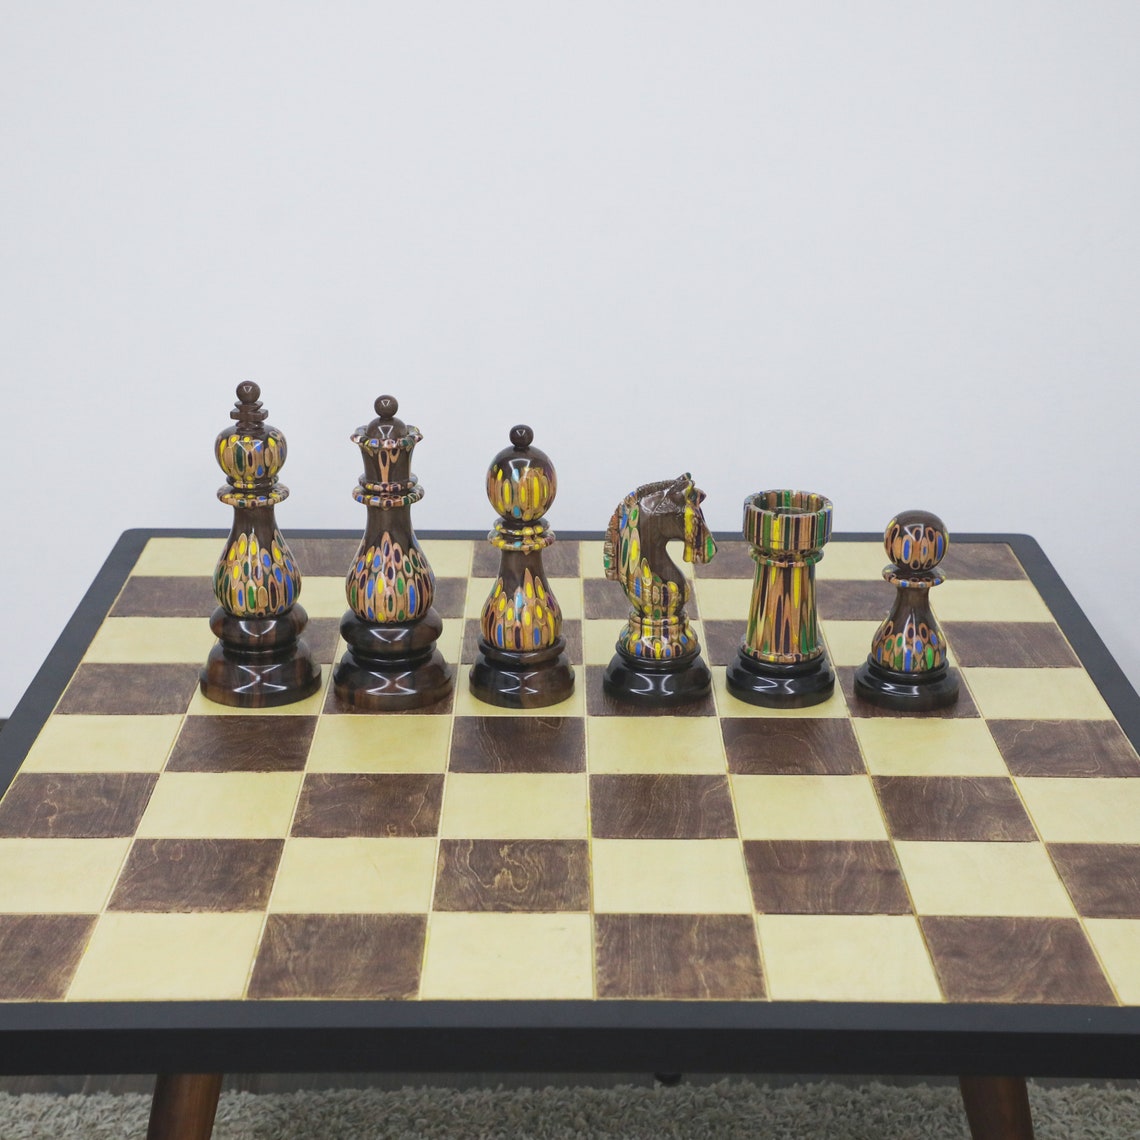 Giant Chess Pieces hoem decor